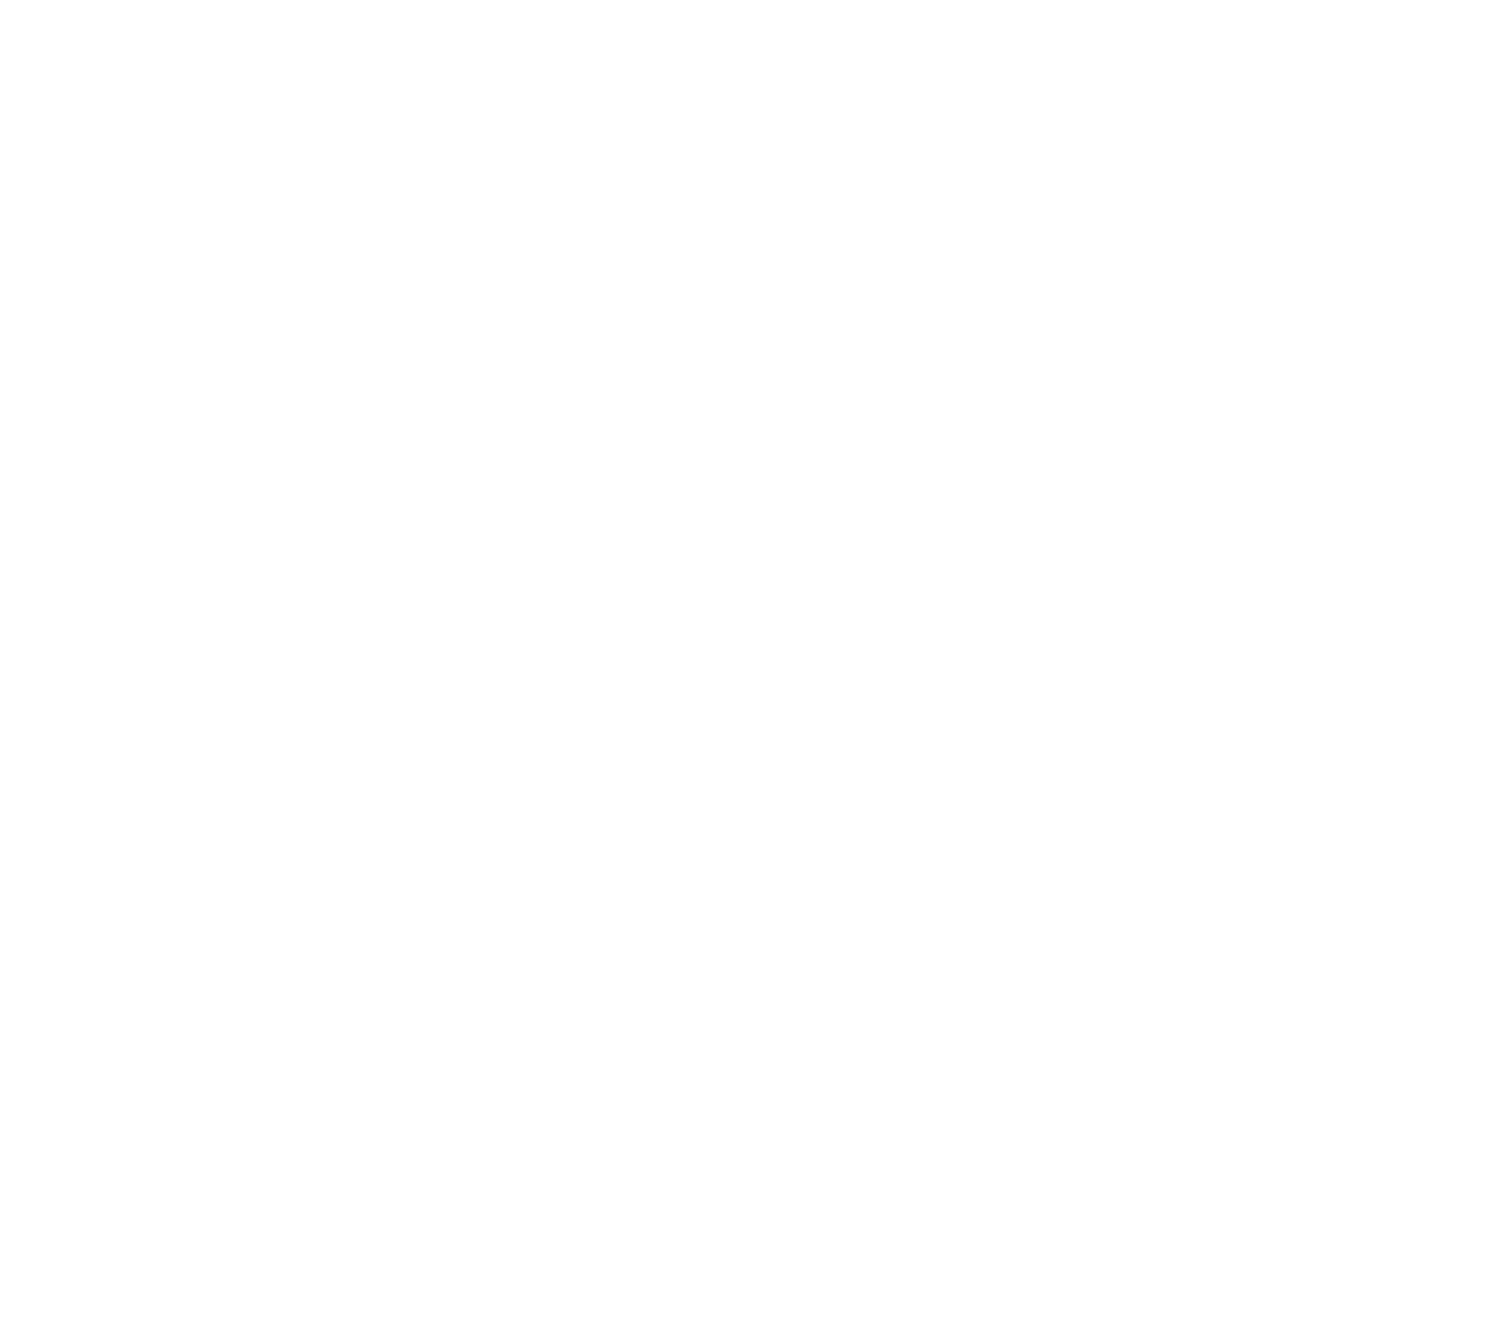 MYT Netherlands Parent (Mytheresa) logo pour fonds sombres (PNG transparent)